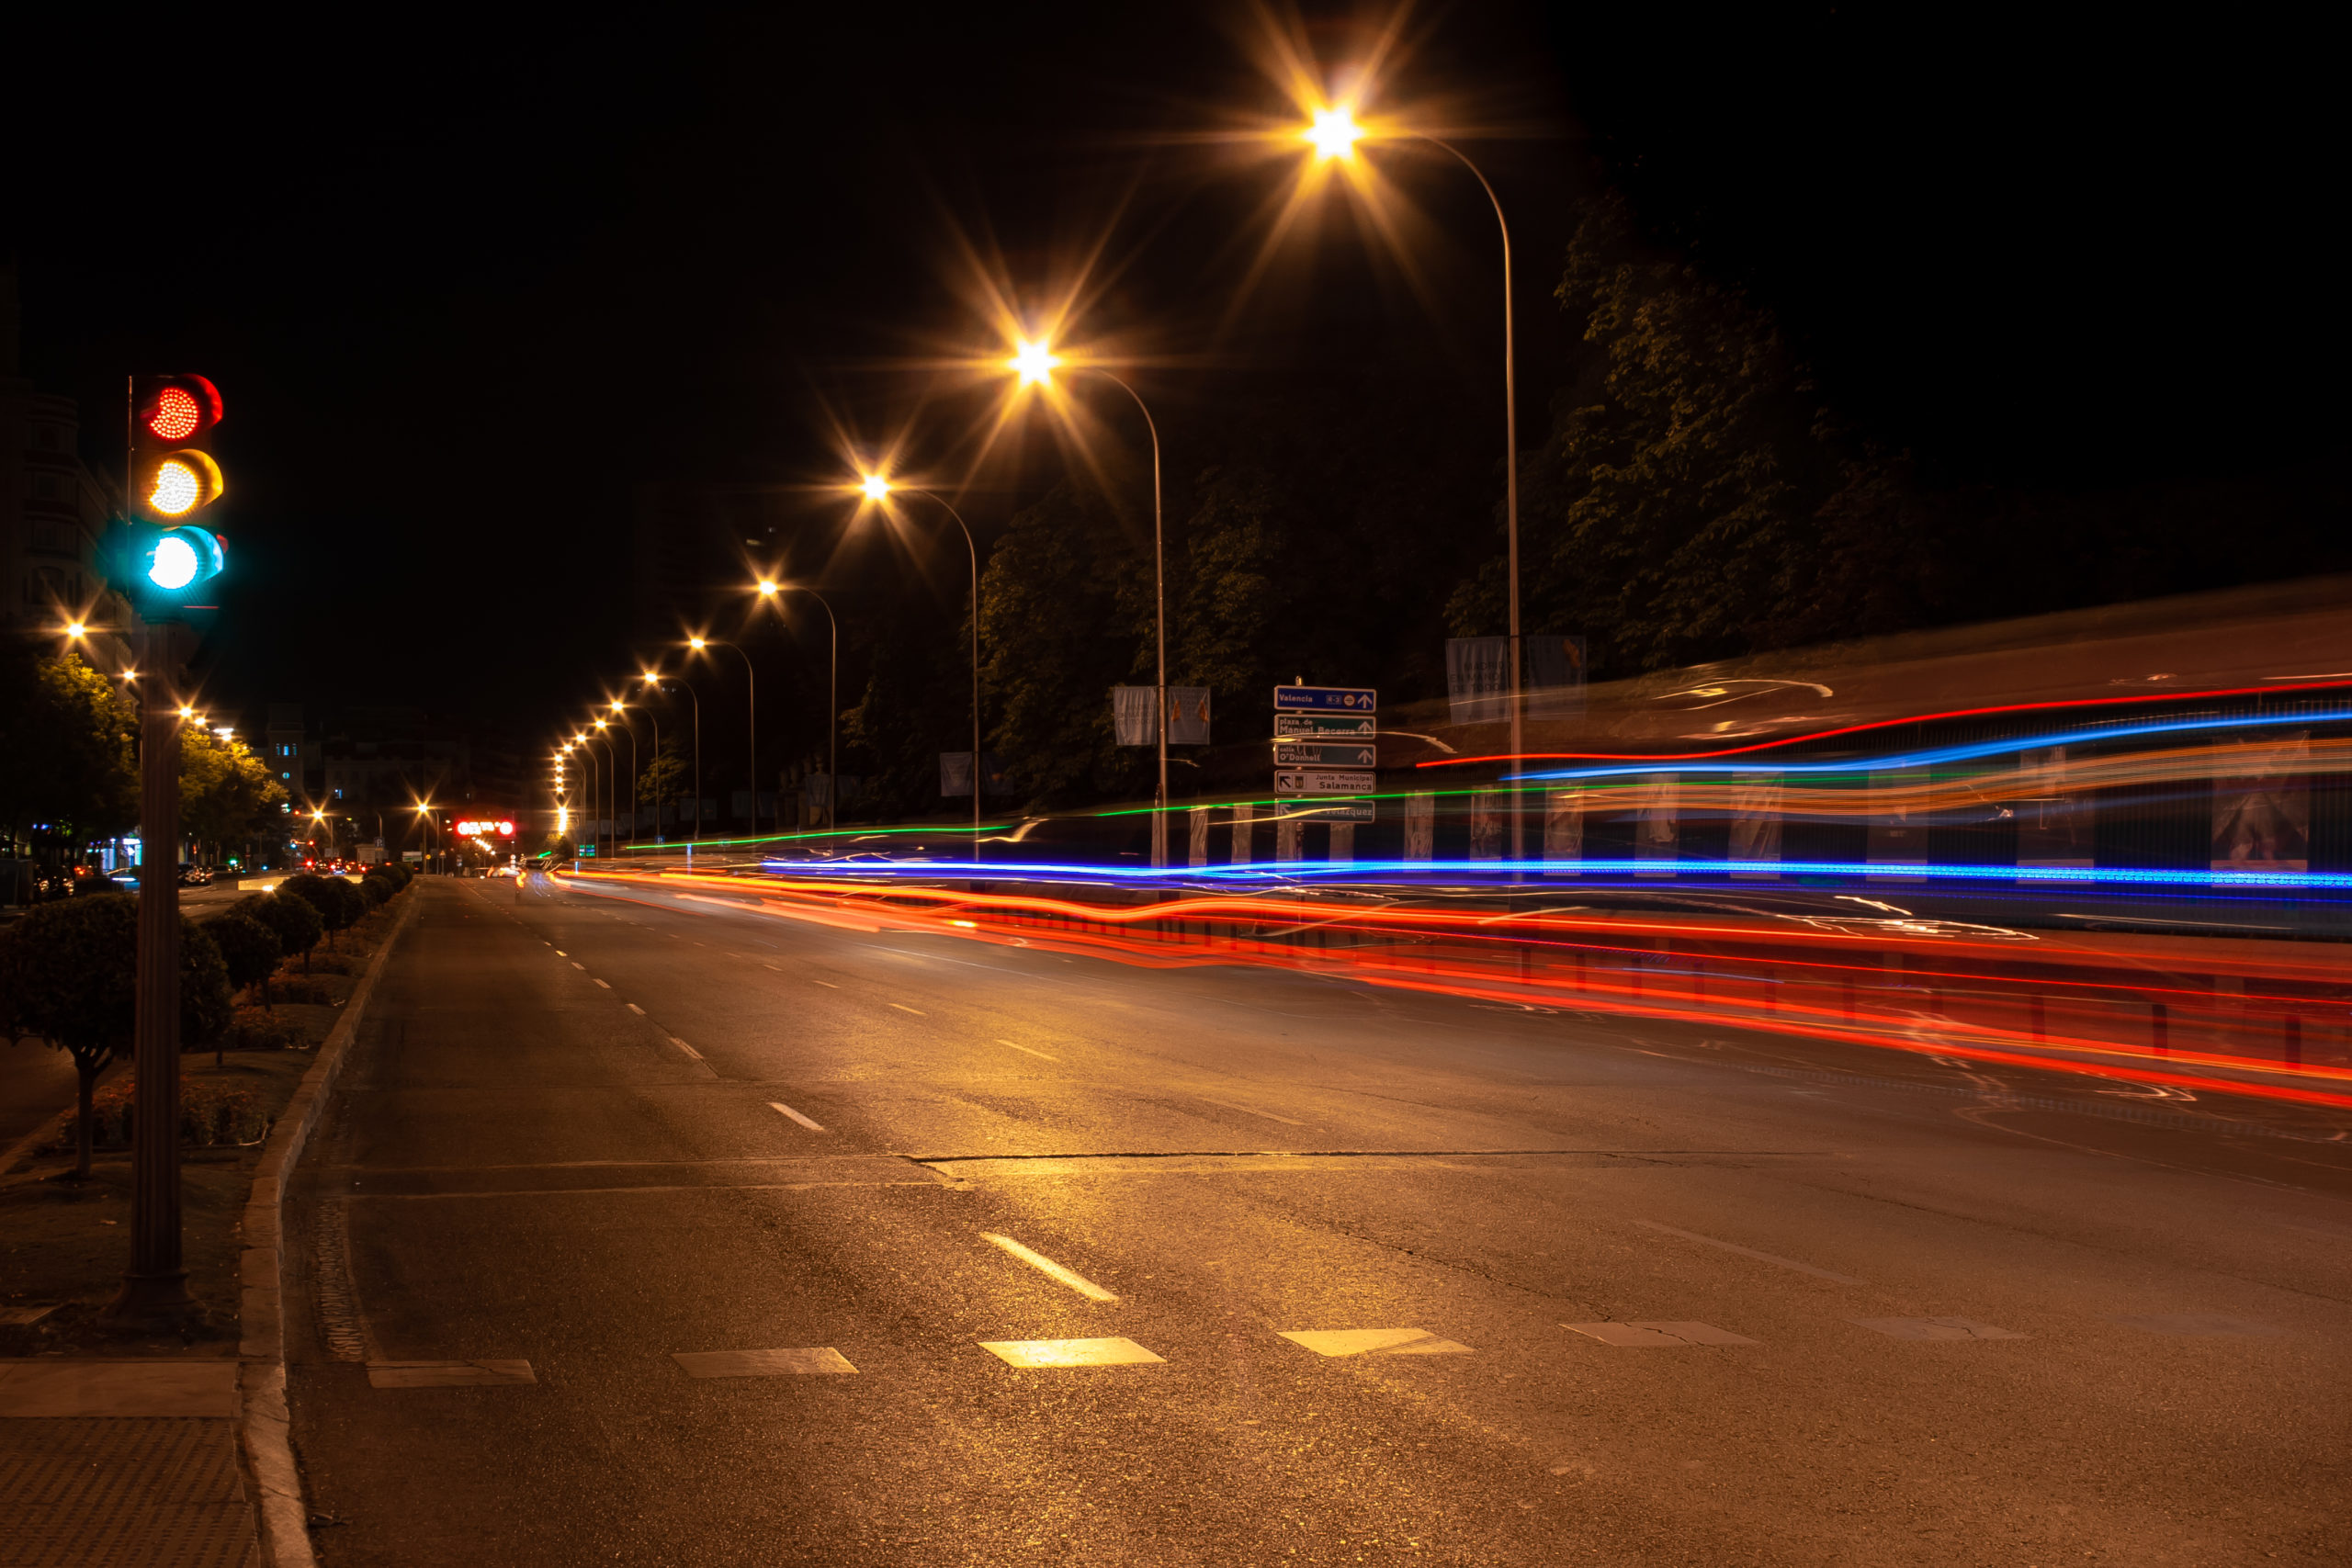 Une route éclairée de nuit avec un feu tricolore, connotant la réglementation suivie par votre taxi.